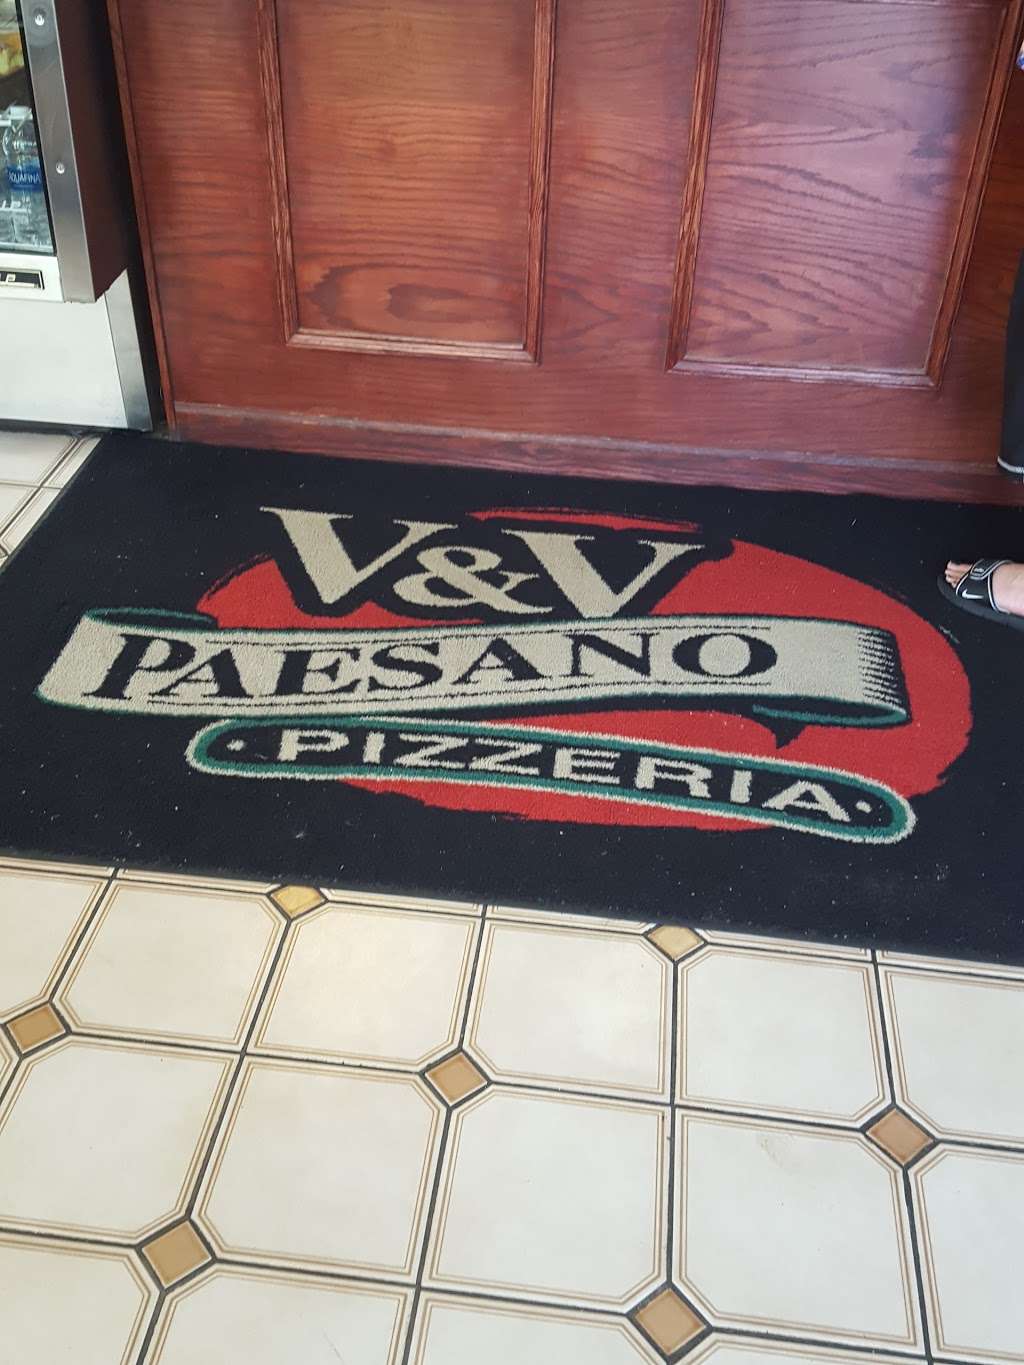 V & V Paesano Pizzeria | 374 S Main St, Bartlett, IL 60103 | Phone: (630) 289-5780